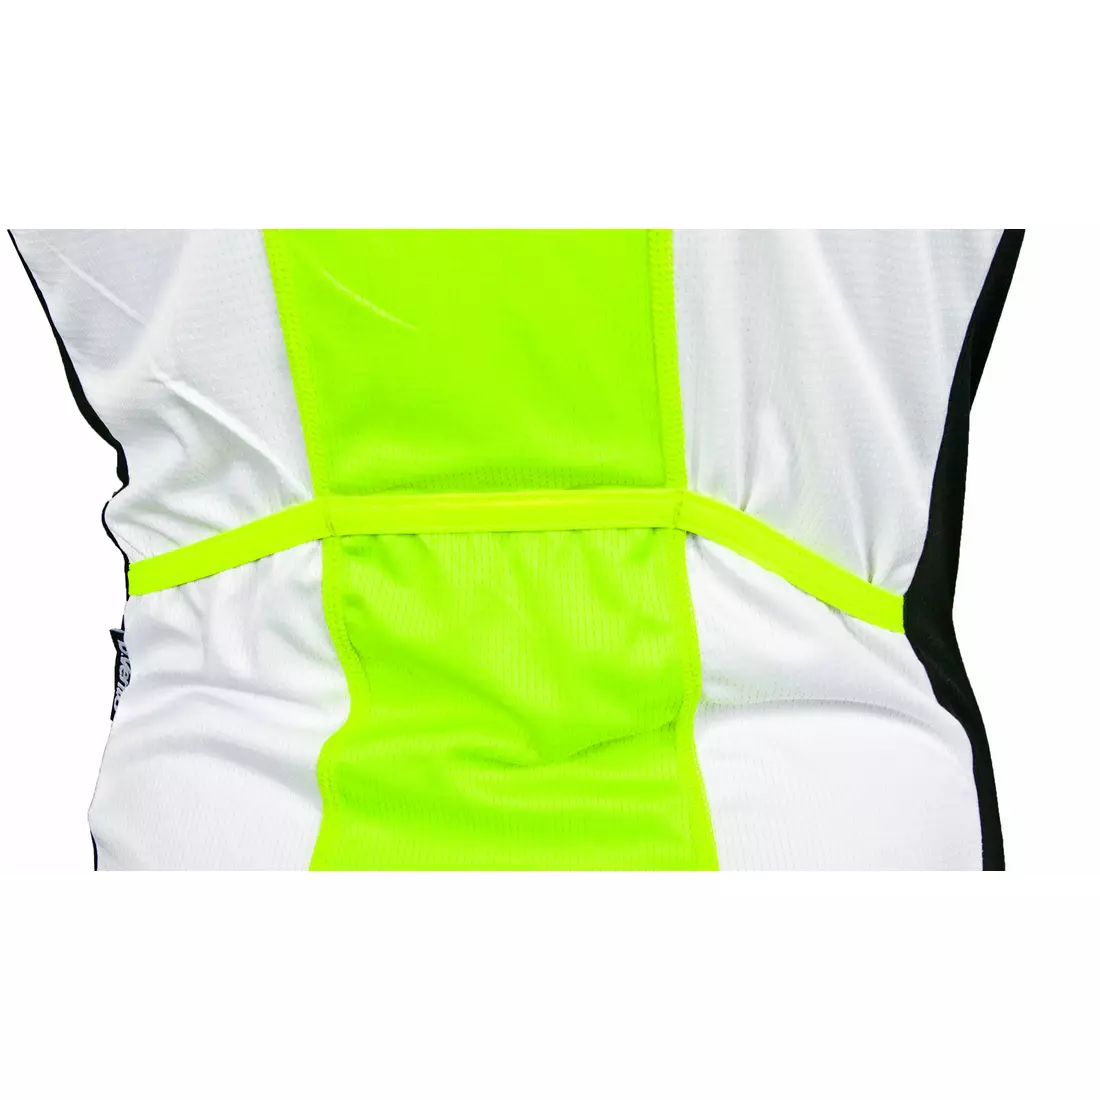 DEKO HAITI II pánský cyklistický dres bez rukávů, bílý fluor